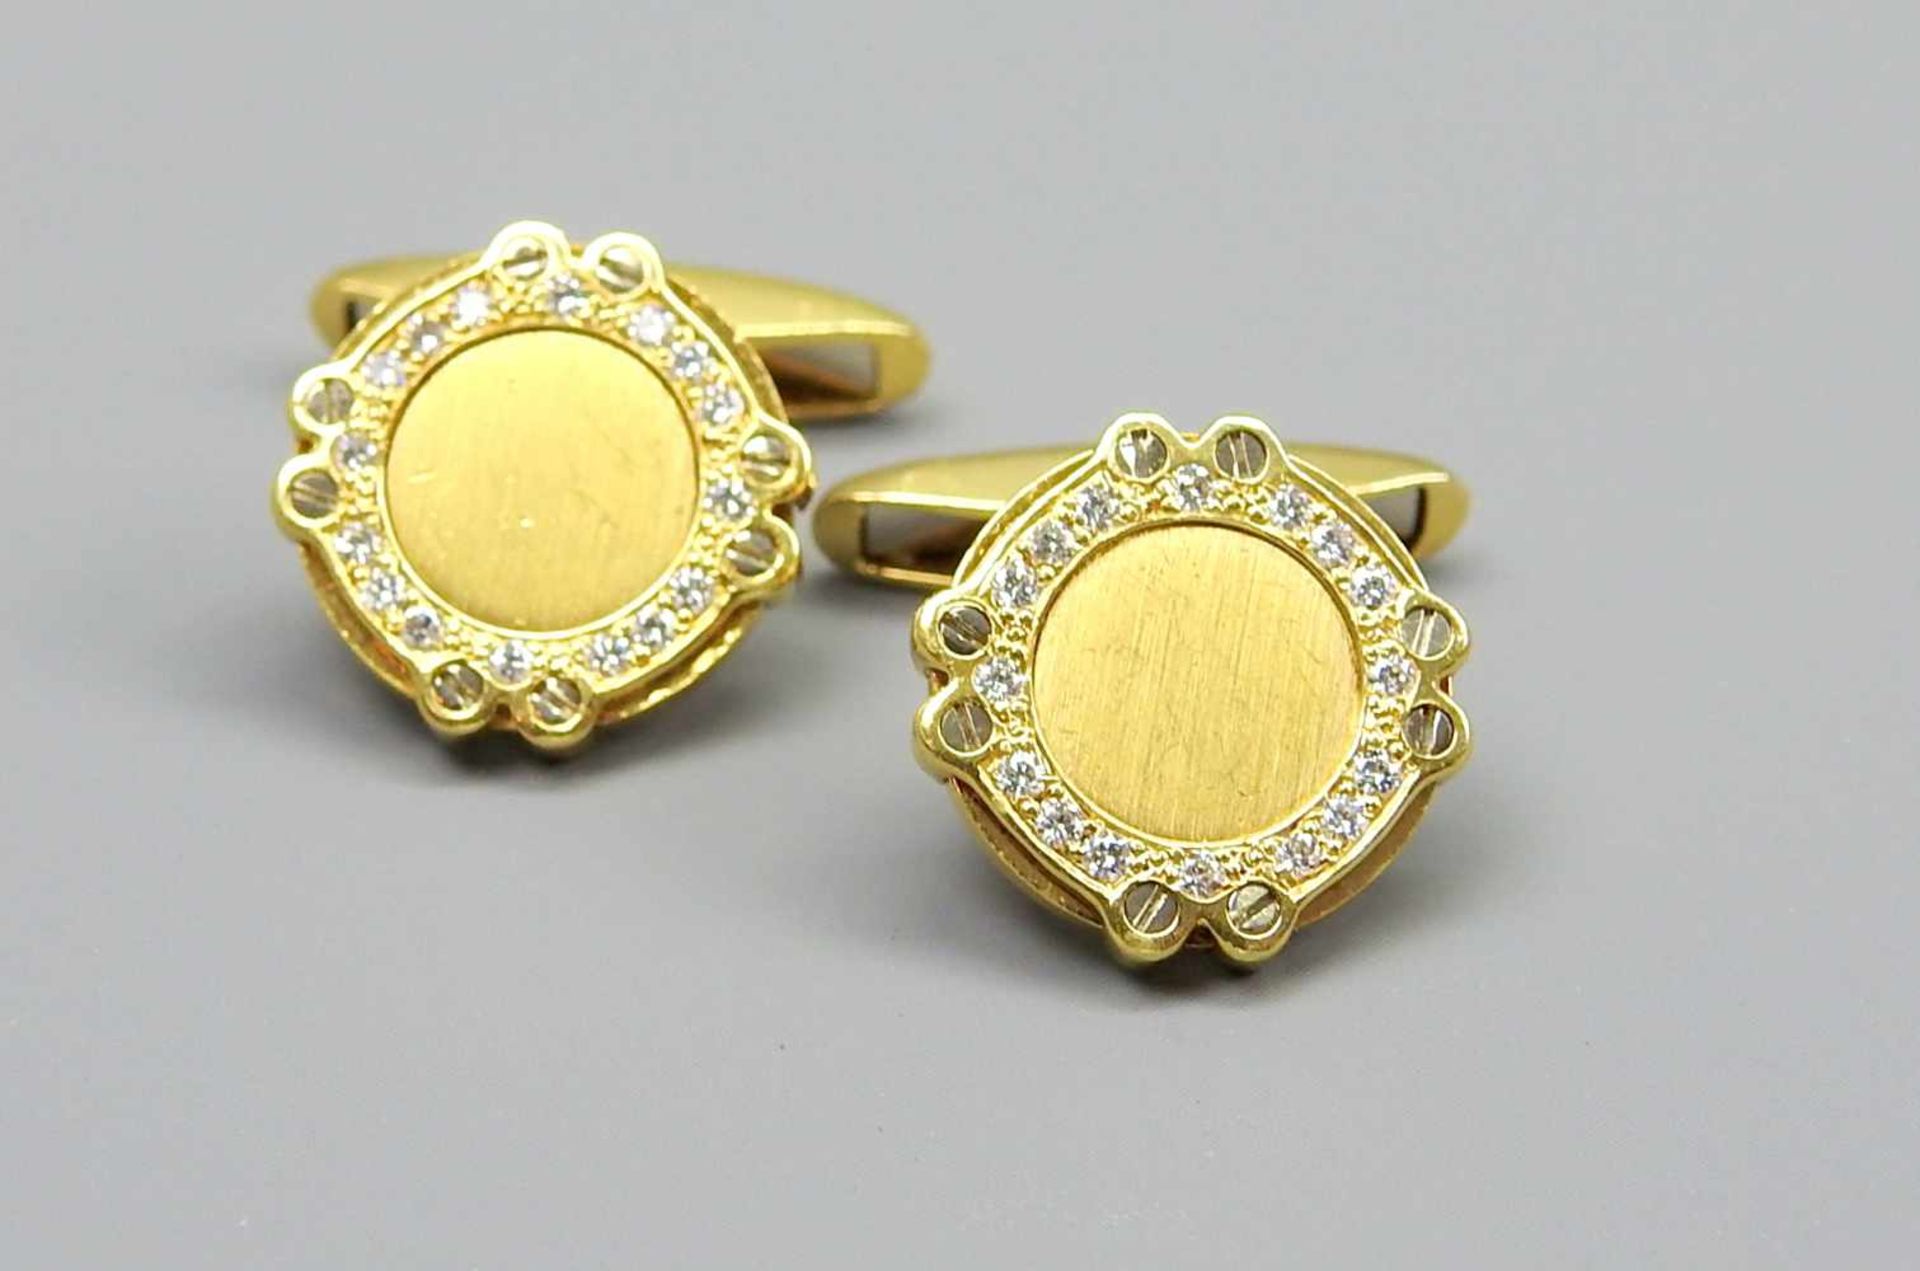 Chopard, Paar Manschettenknöpfe18 K. Gelbgold mit Diamantbesatz. Paar runder Manschettenknöpfe mit